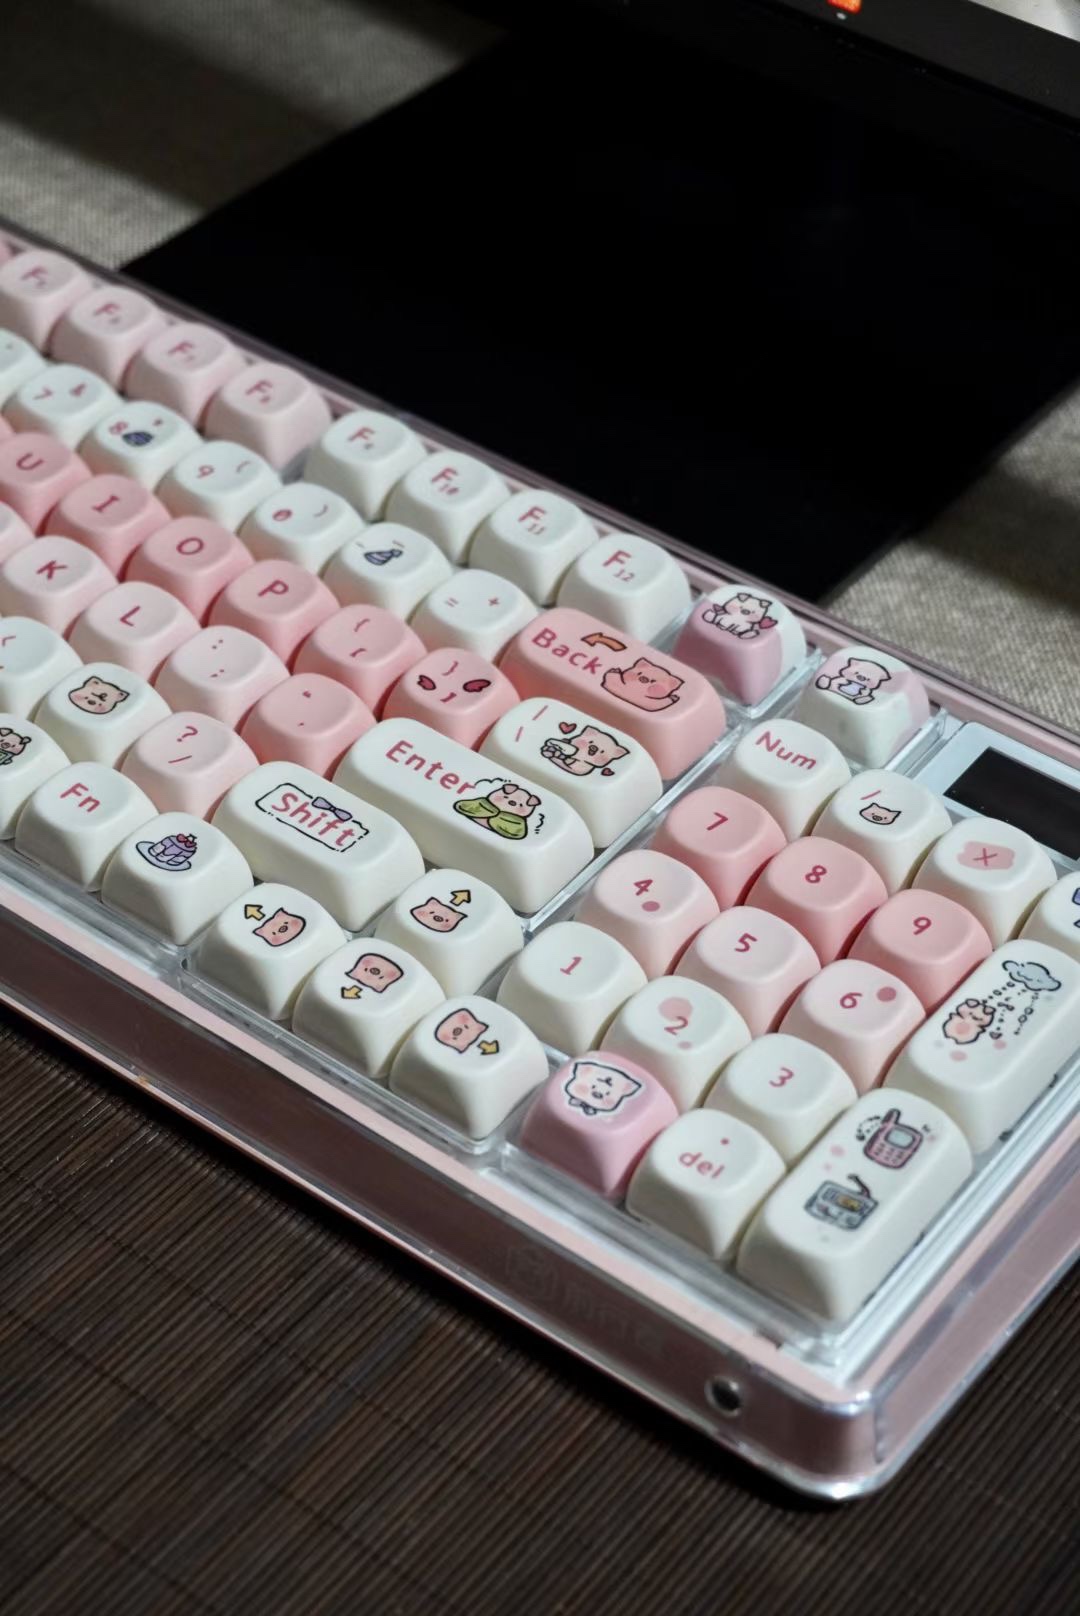 粉红小猪键帽moa高度PBT材质机械键盘键帽圆润可爱卡通140键